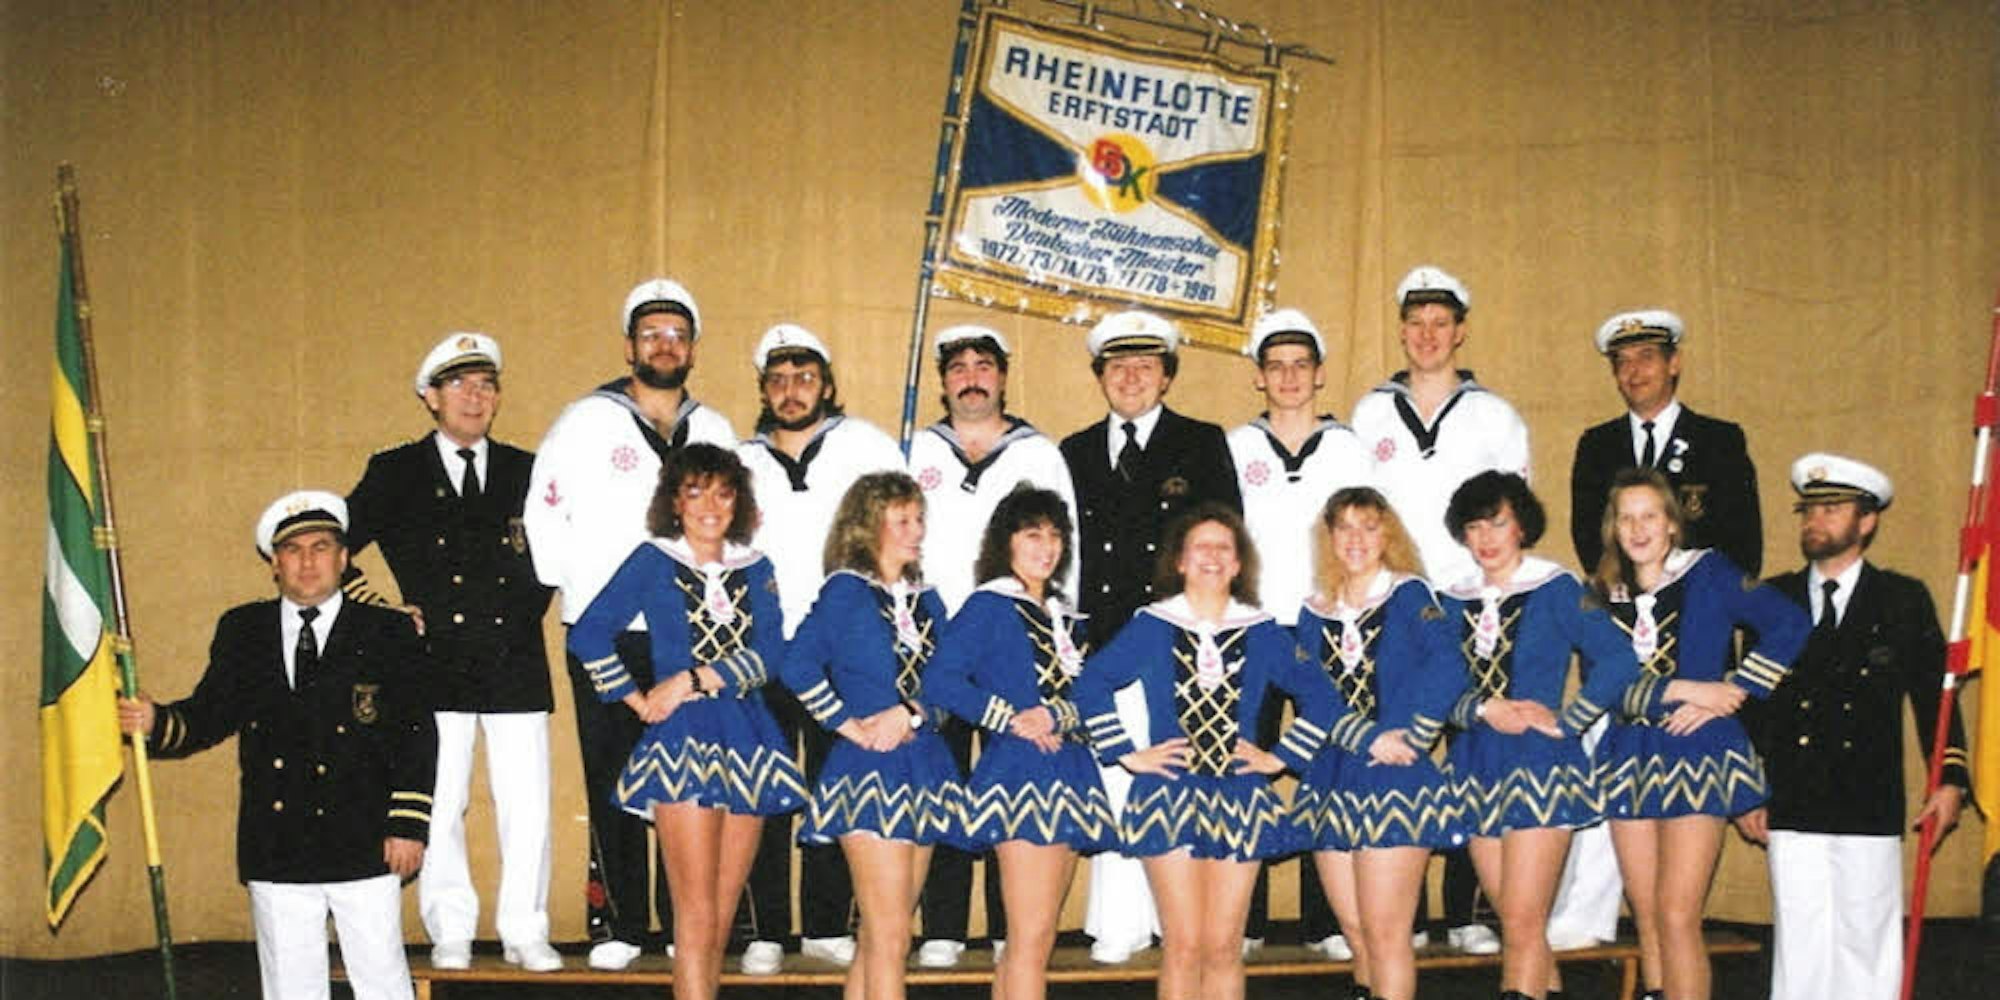 Mit akrobatischen Einlagen erfreute die Tanzgruppe der Rheinflotte Blaue Jungs bereits 1978 ihr Publikum.